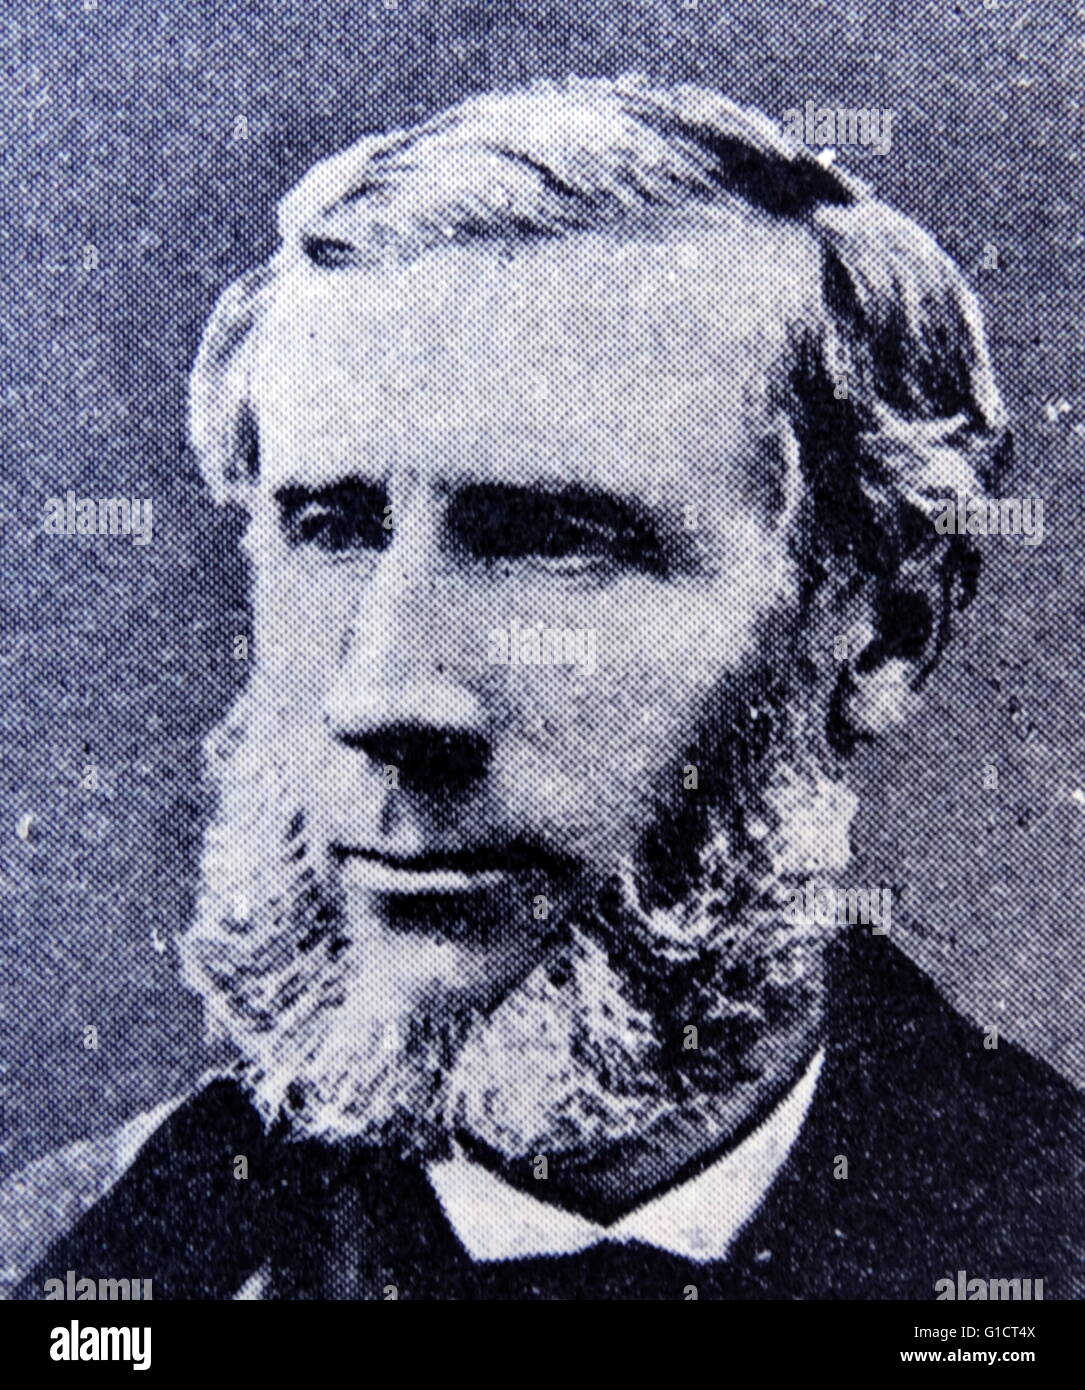 Fotografisches Porträt des irischen Physiker John Tyndall (1820-1893). Vom 19. Jahrhundert Stockfoto